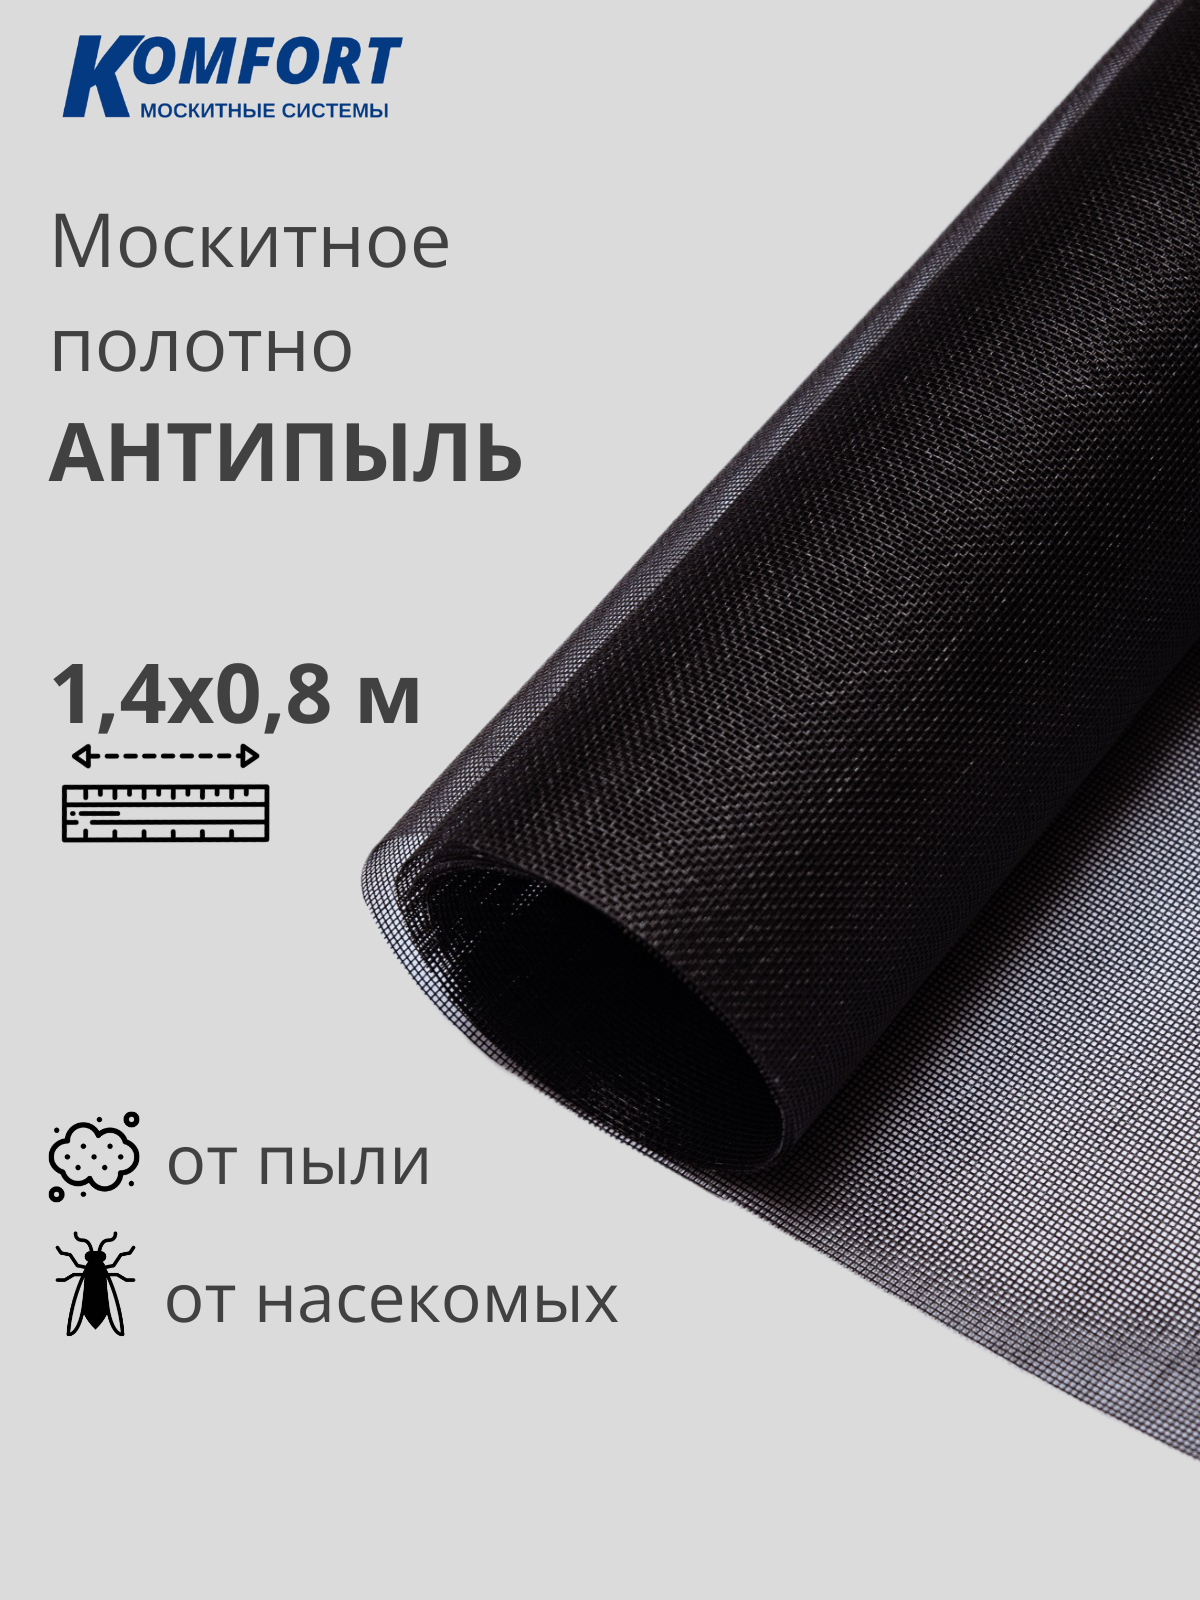 Москитная сетка Антипыль Micro Mesh москитное полотно черное 1,4*0,8 м